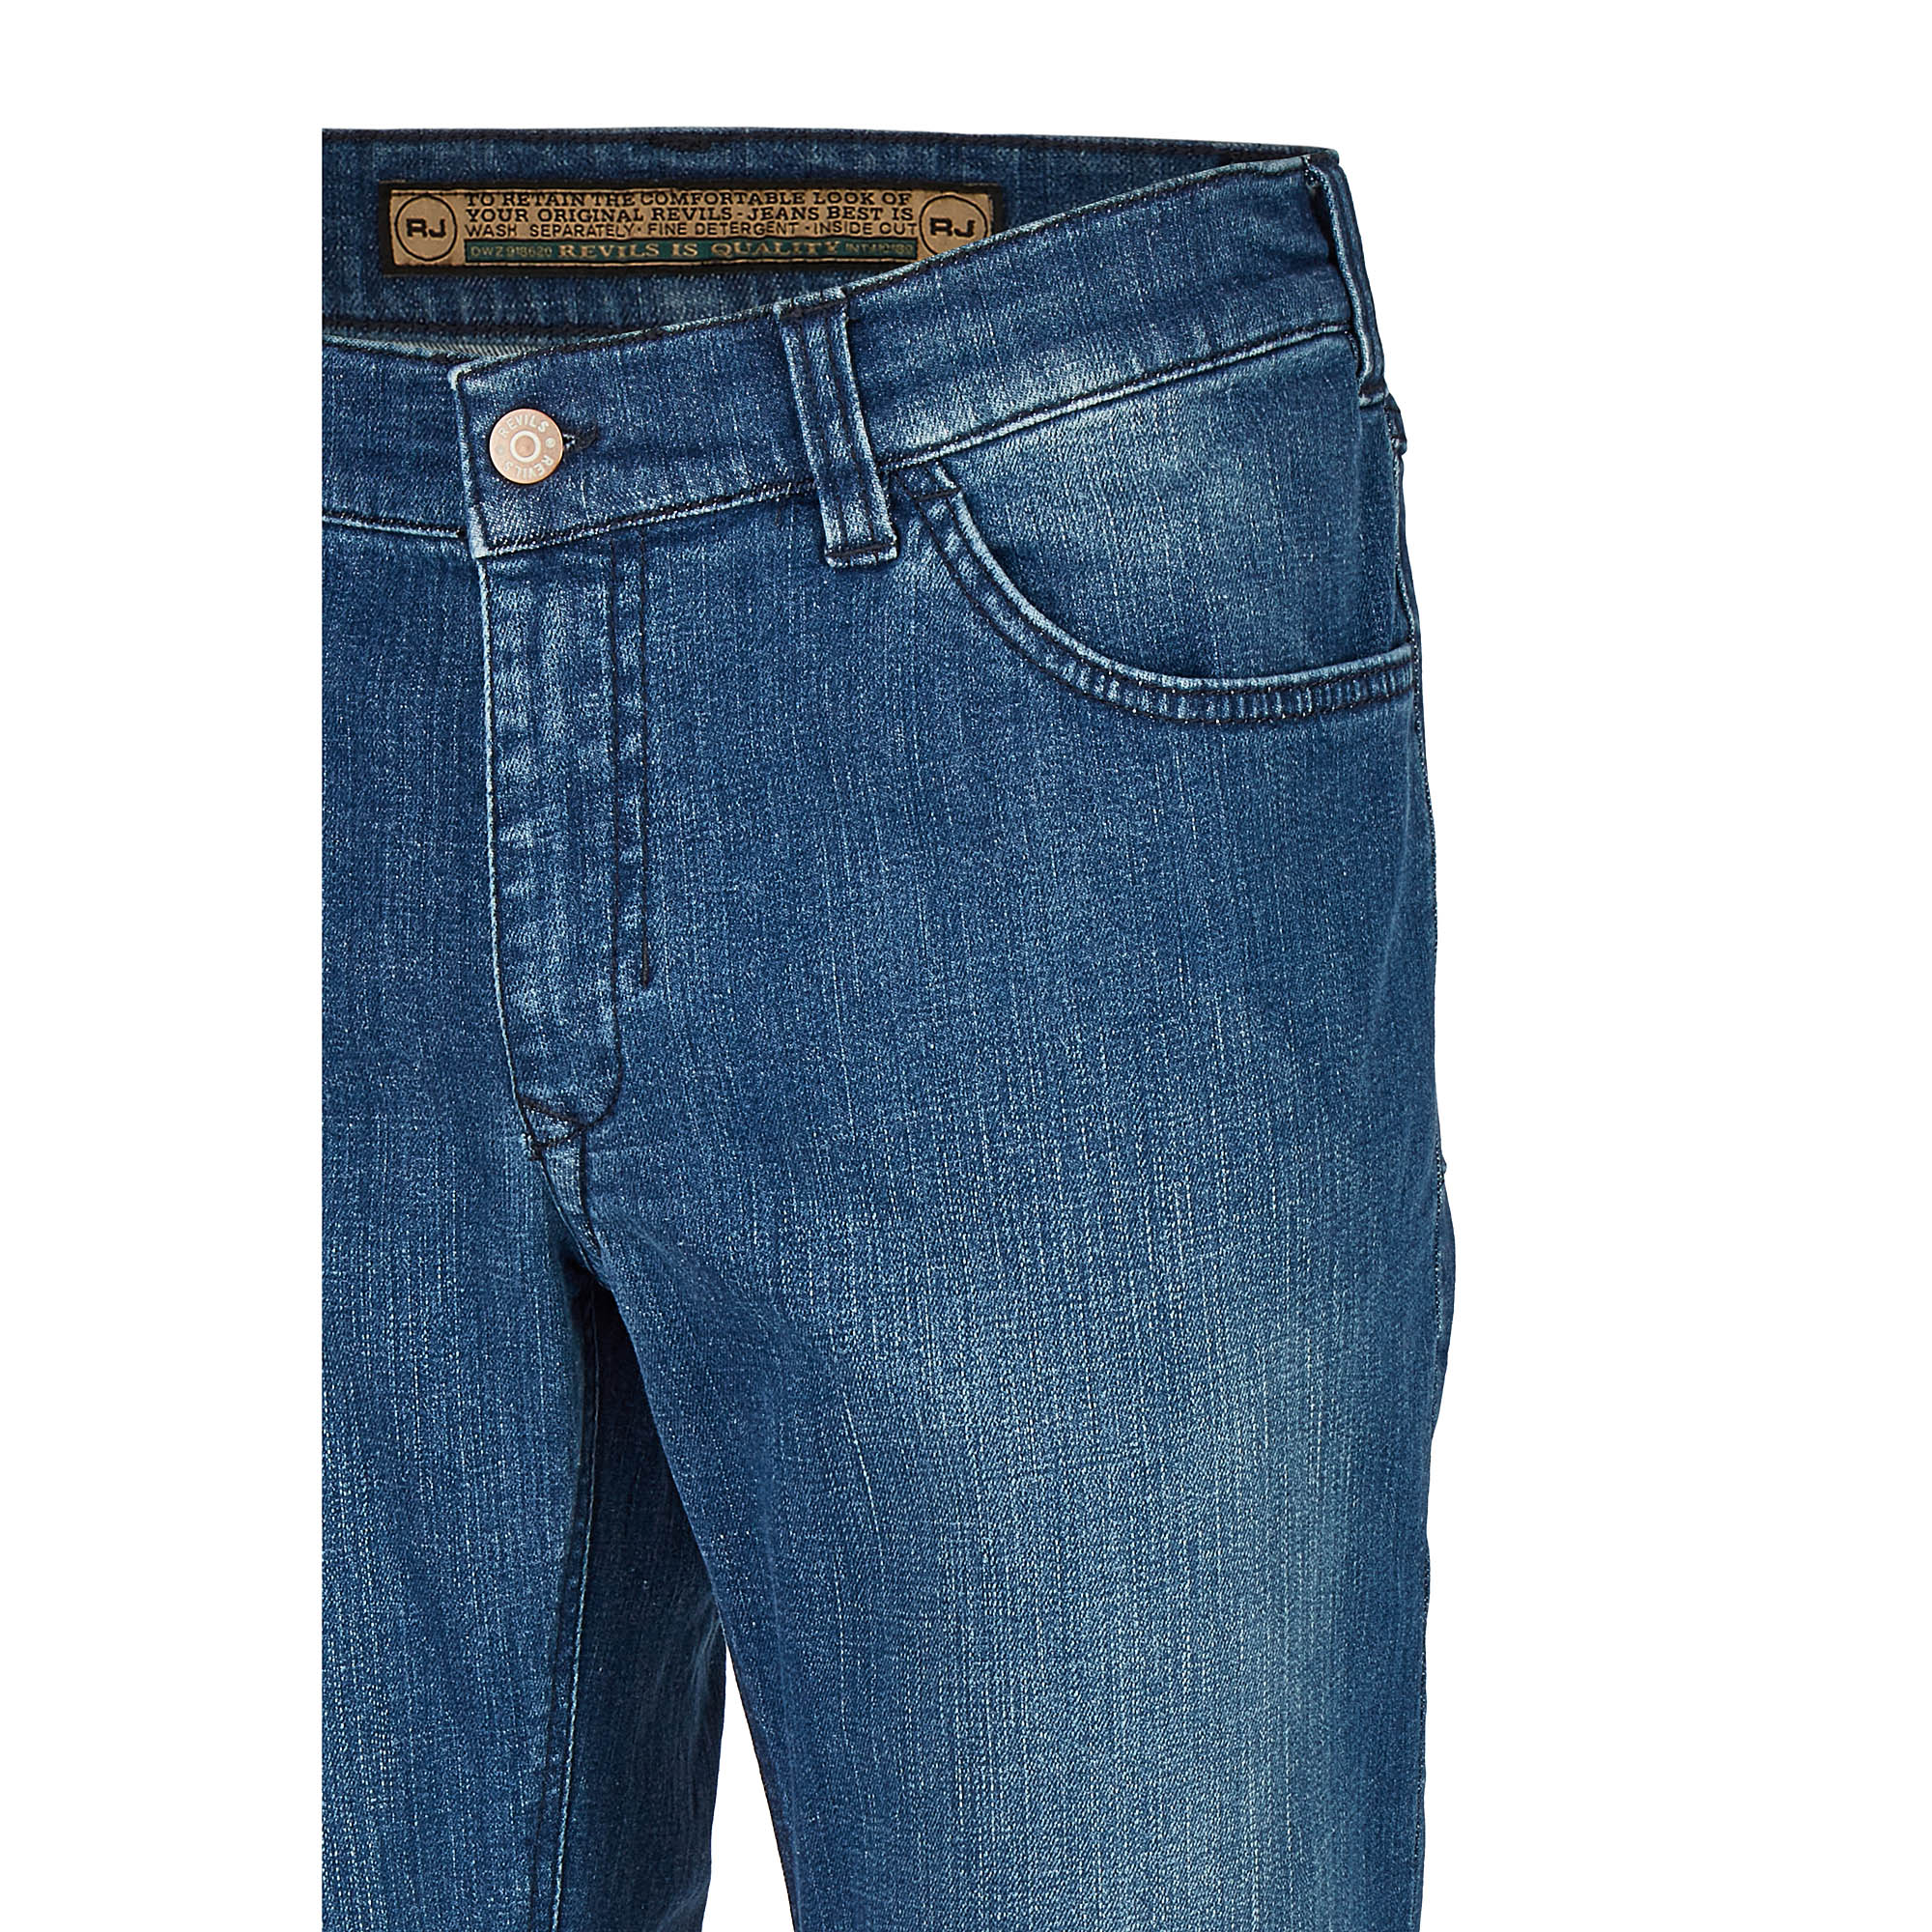 007130541330 3 Revils Jeans Hosen